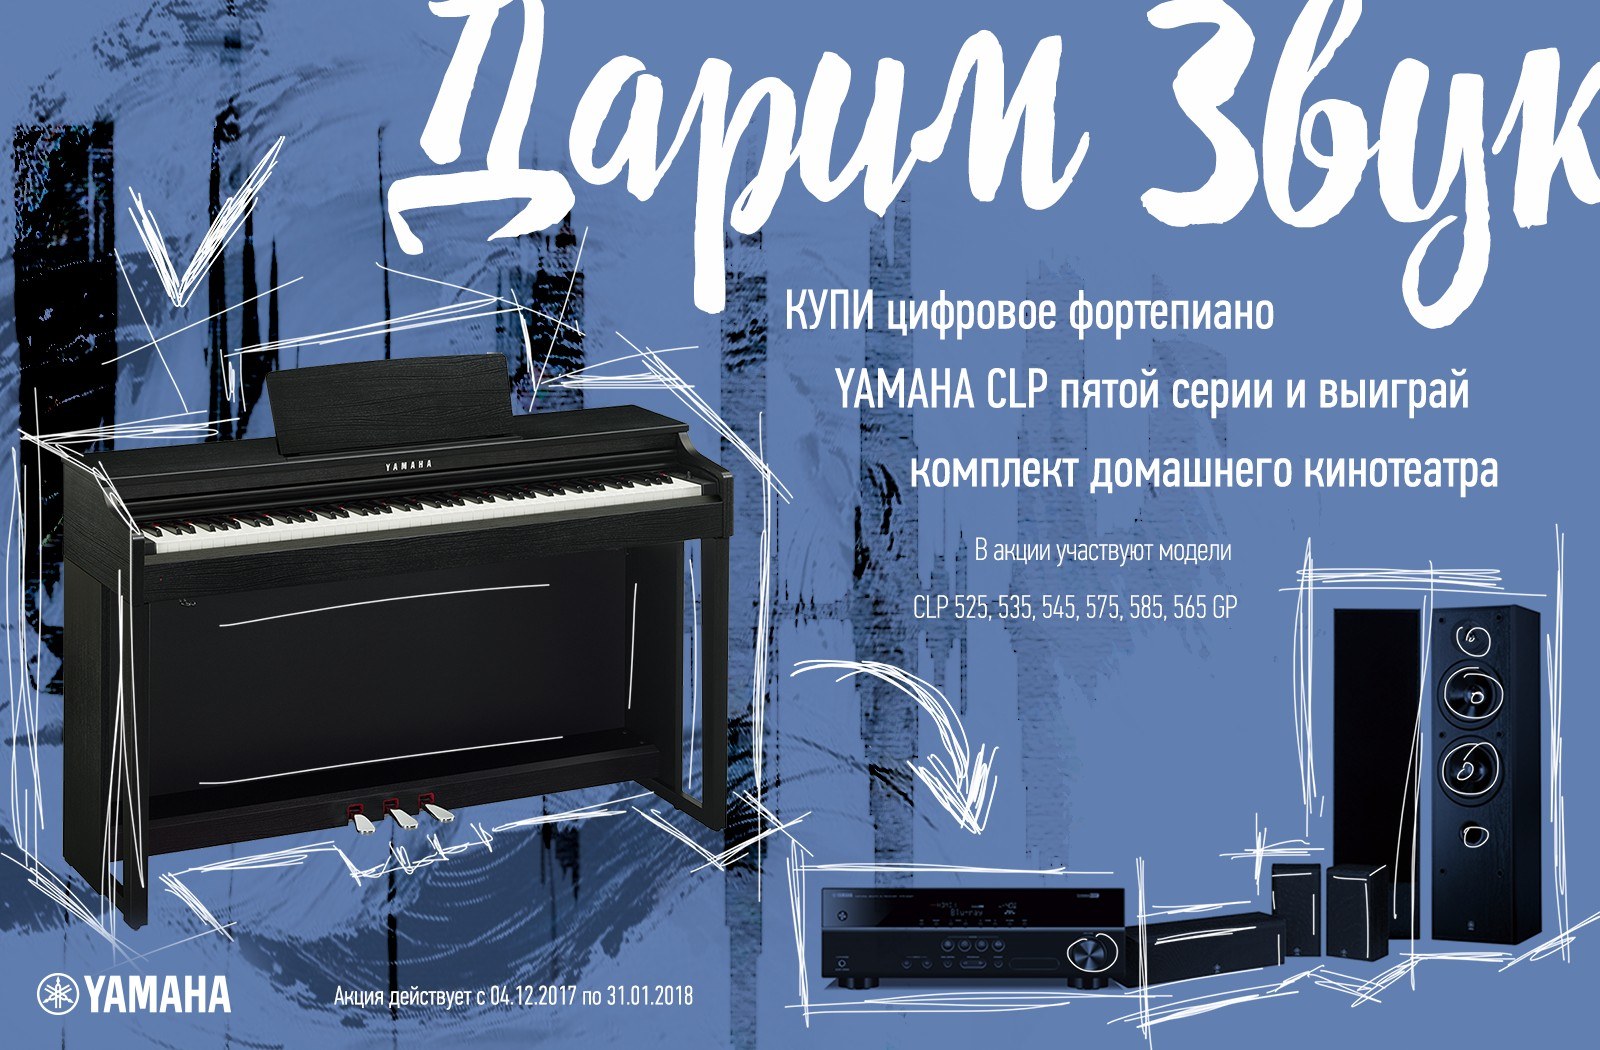 C 4 декабря 2017 года по 31 января 2018 года купите цифровое фортепиано Yamaha CLP пятой серии и выиграйте один из десяти комплектов домашнего кинотеатра.